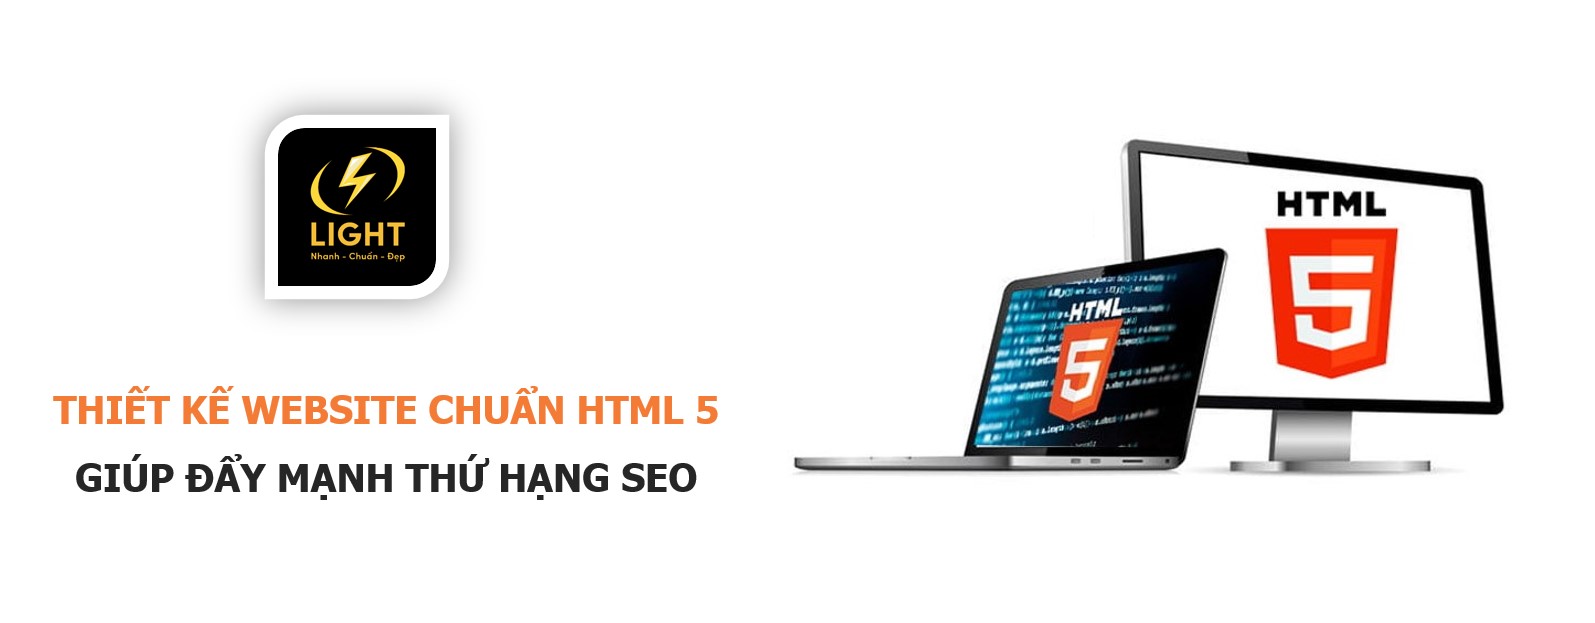 Thiết kế website chuẩn HTML 5 giúp đẩy mạnh thứ hạng SEO